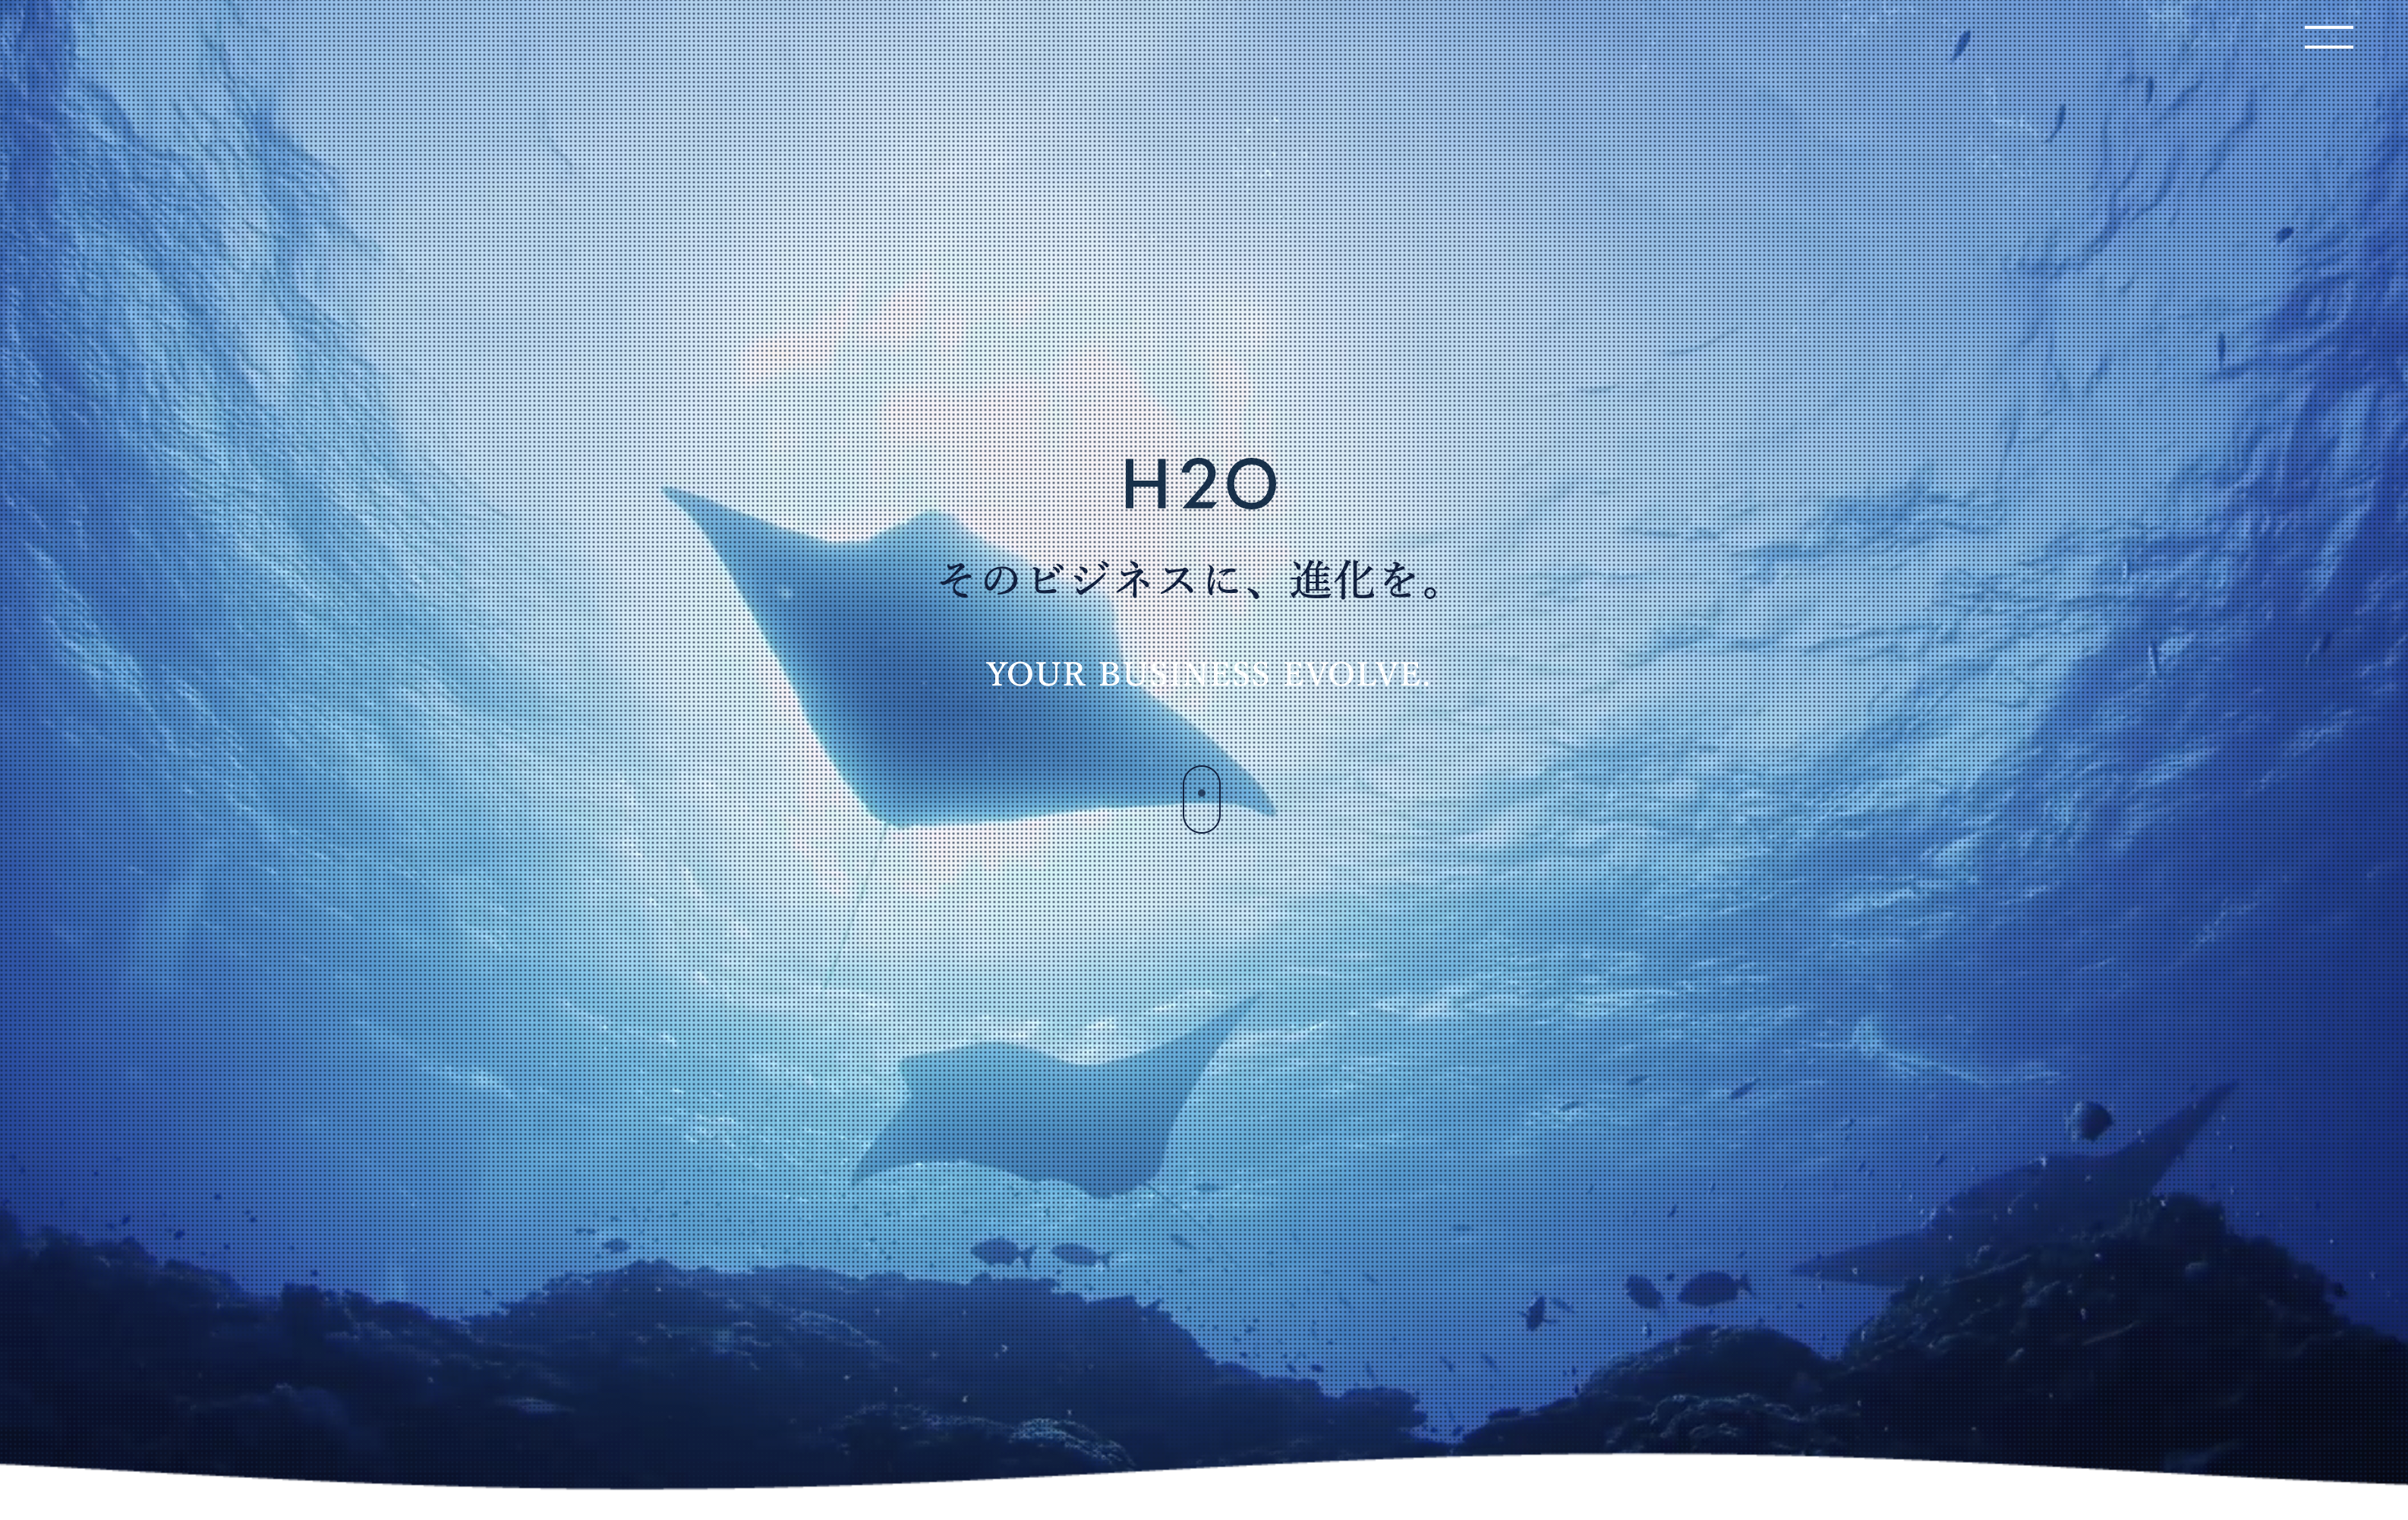 株式会社H2Oの株式会社H2O:システム開発サービス